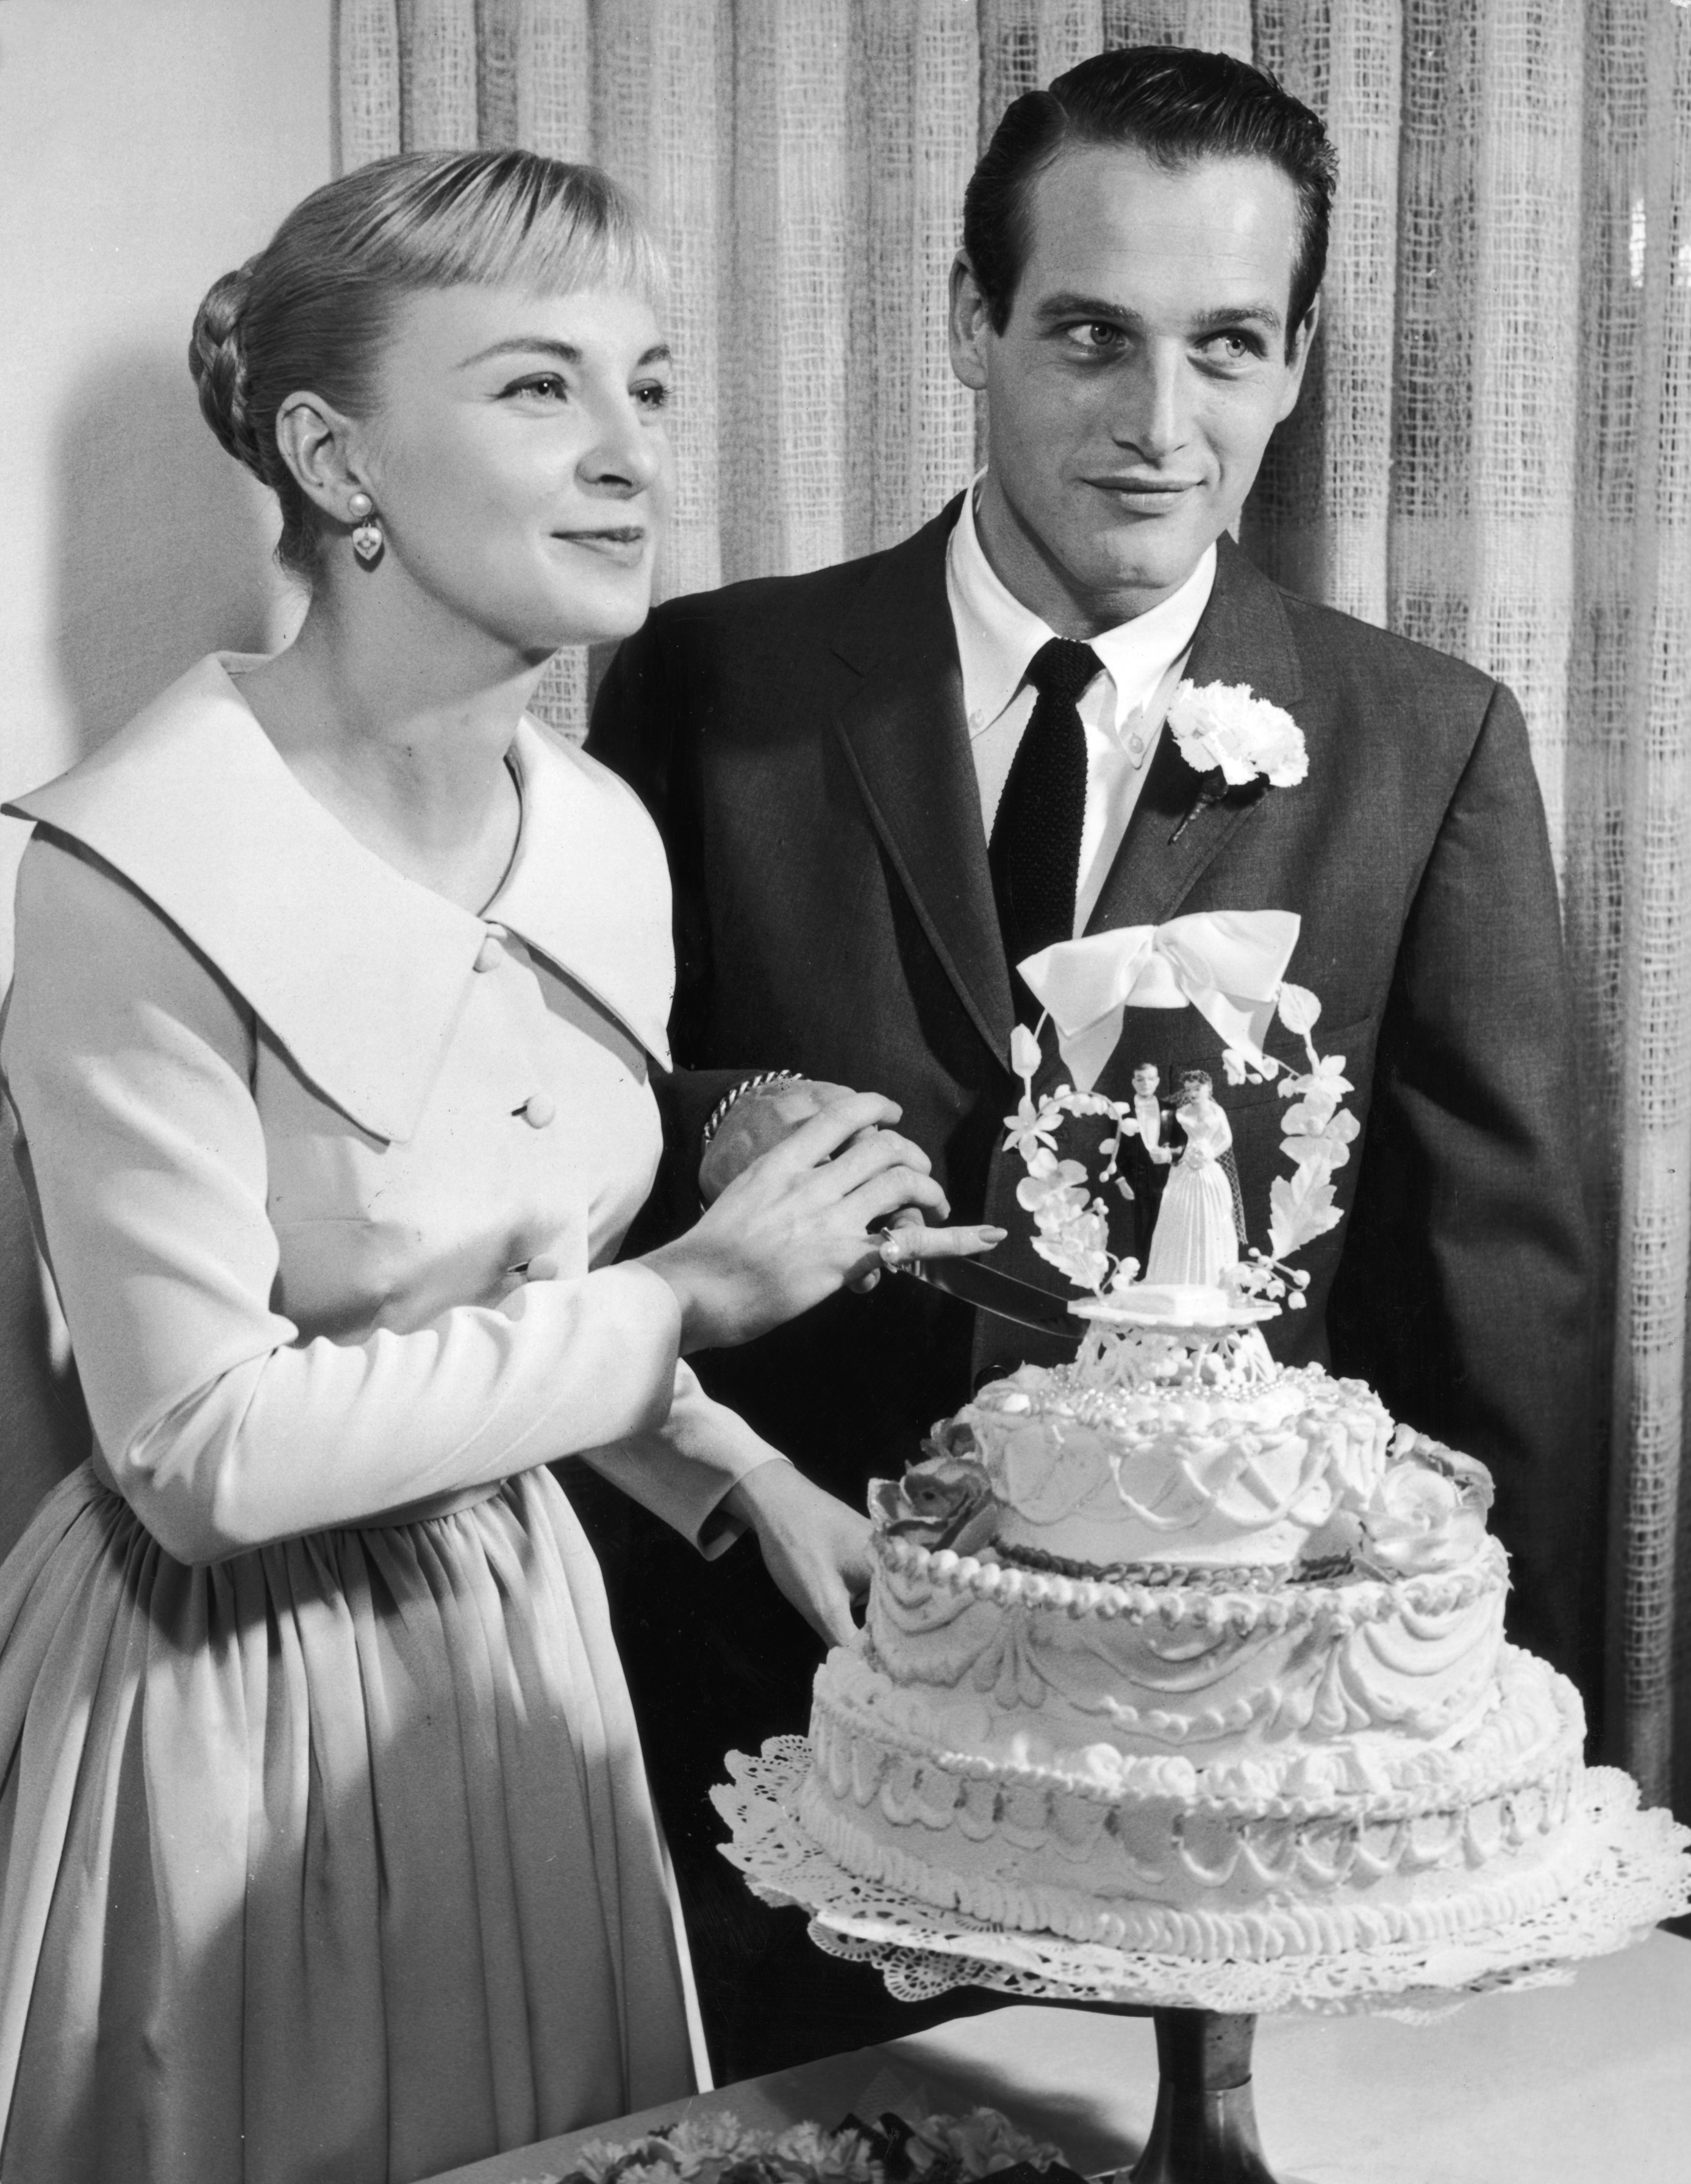 Las Vegas, 29 gennaio 1958. Il taglio della torta nuziale